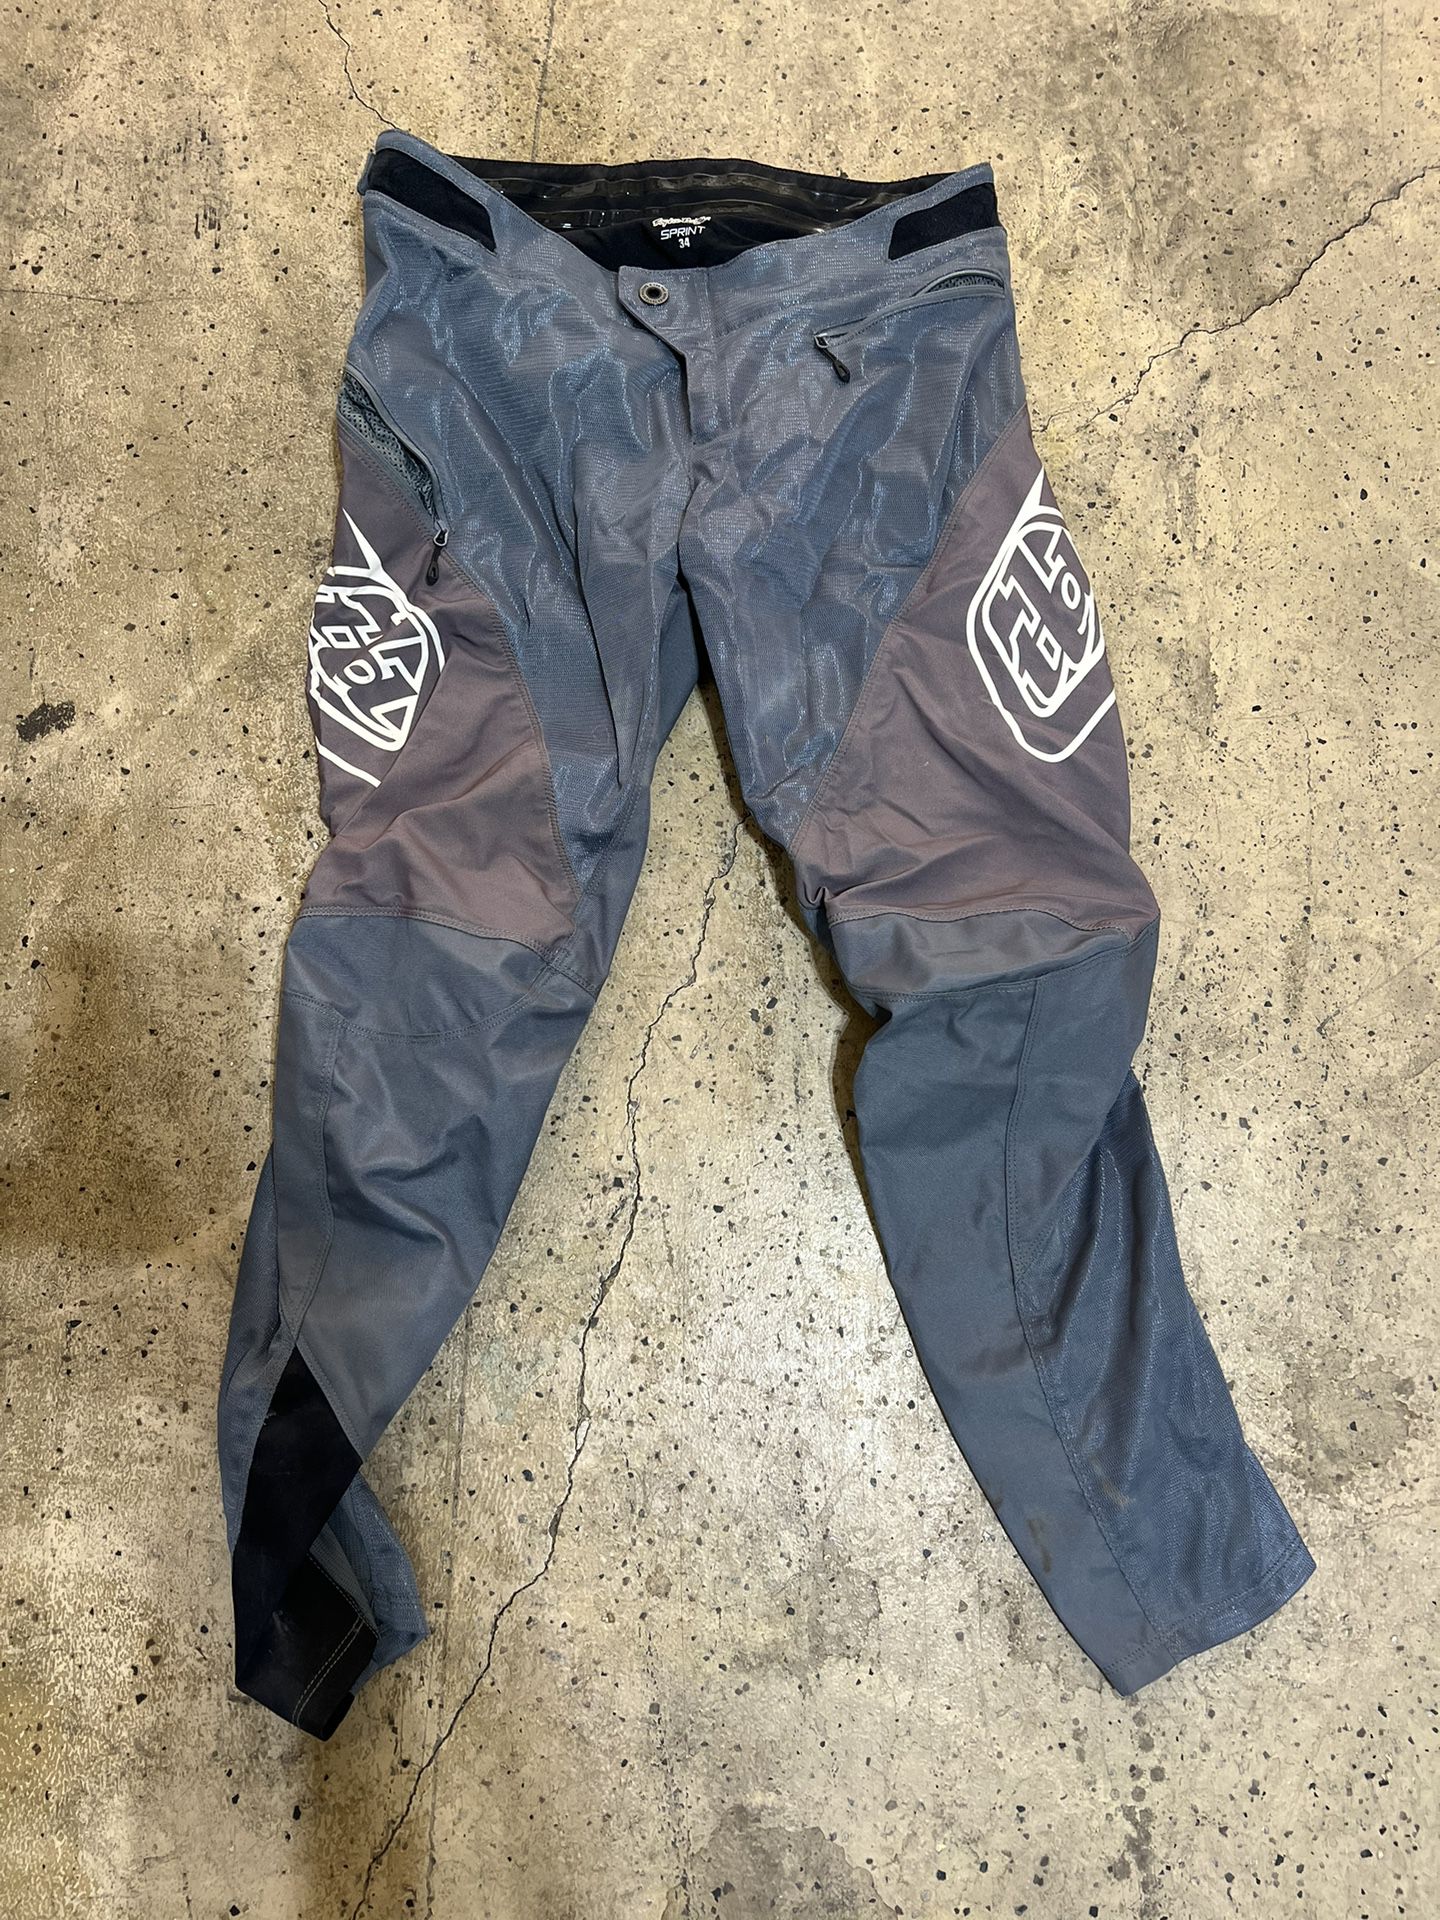 BMX/ Mountain Bike Race Pants 